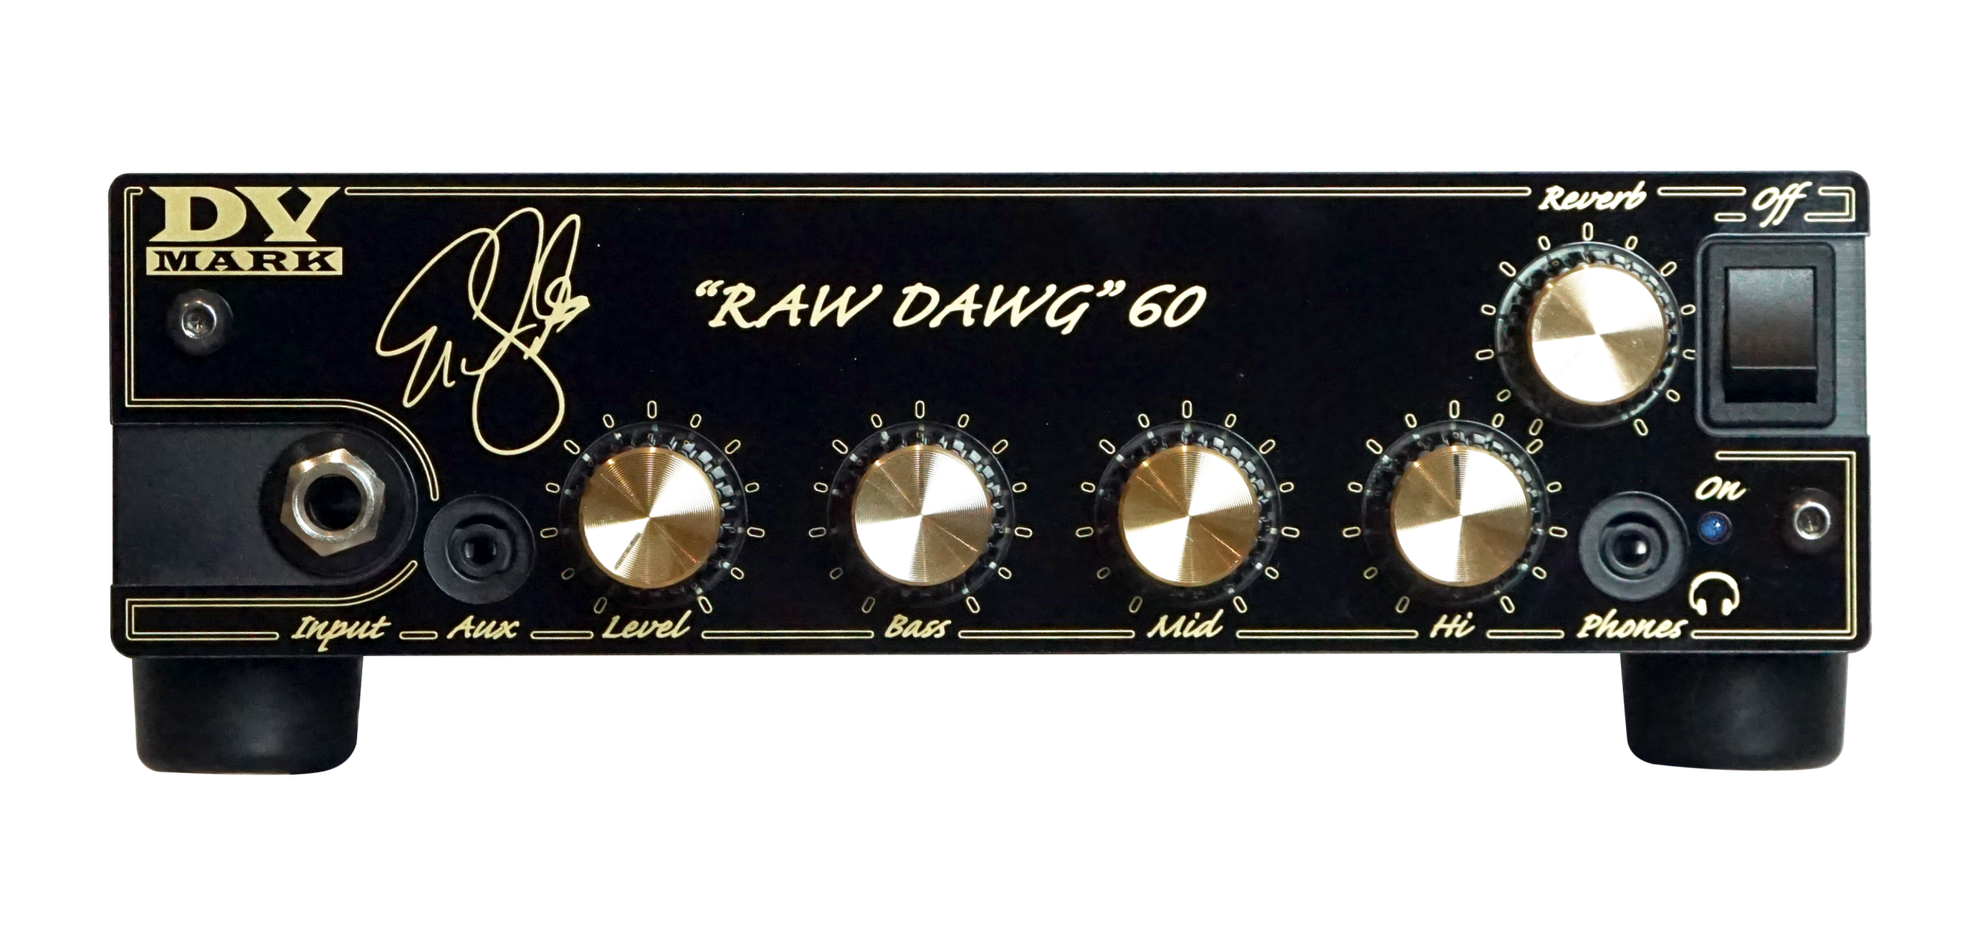 Dv Mark Eric Gales Dv Raw Dawg 60w Head - Electric guitar amp head - Variation 1